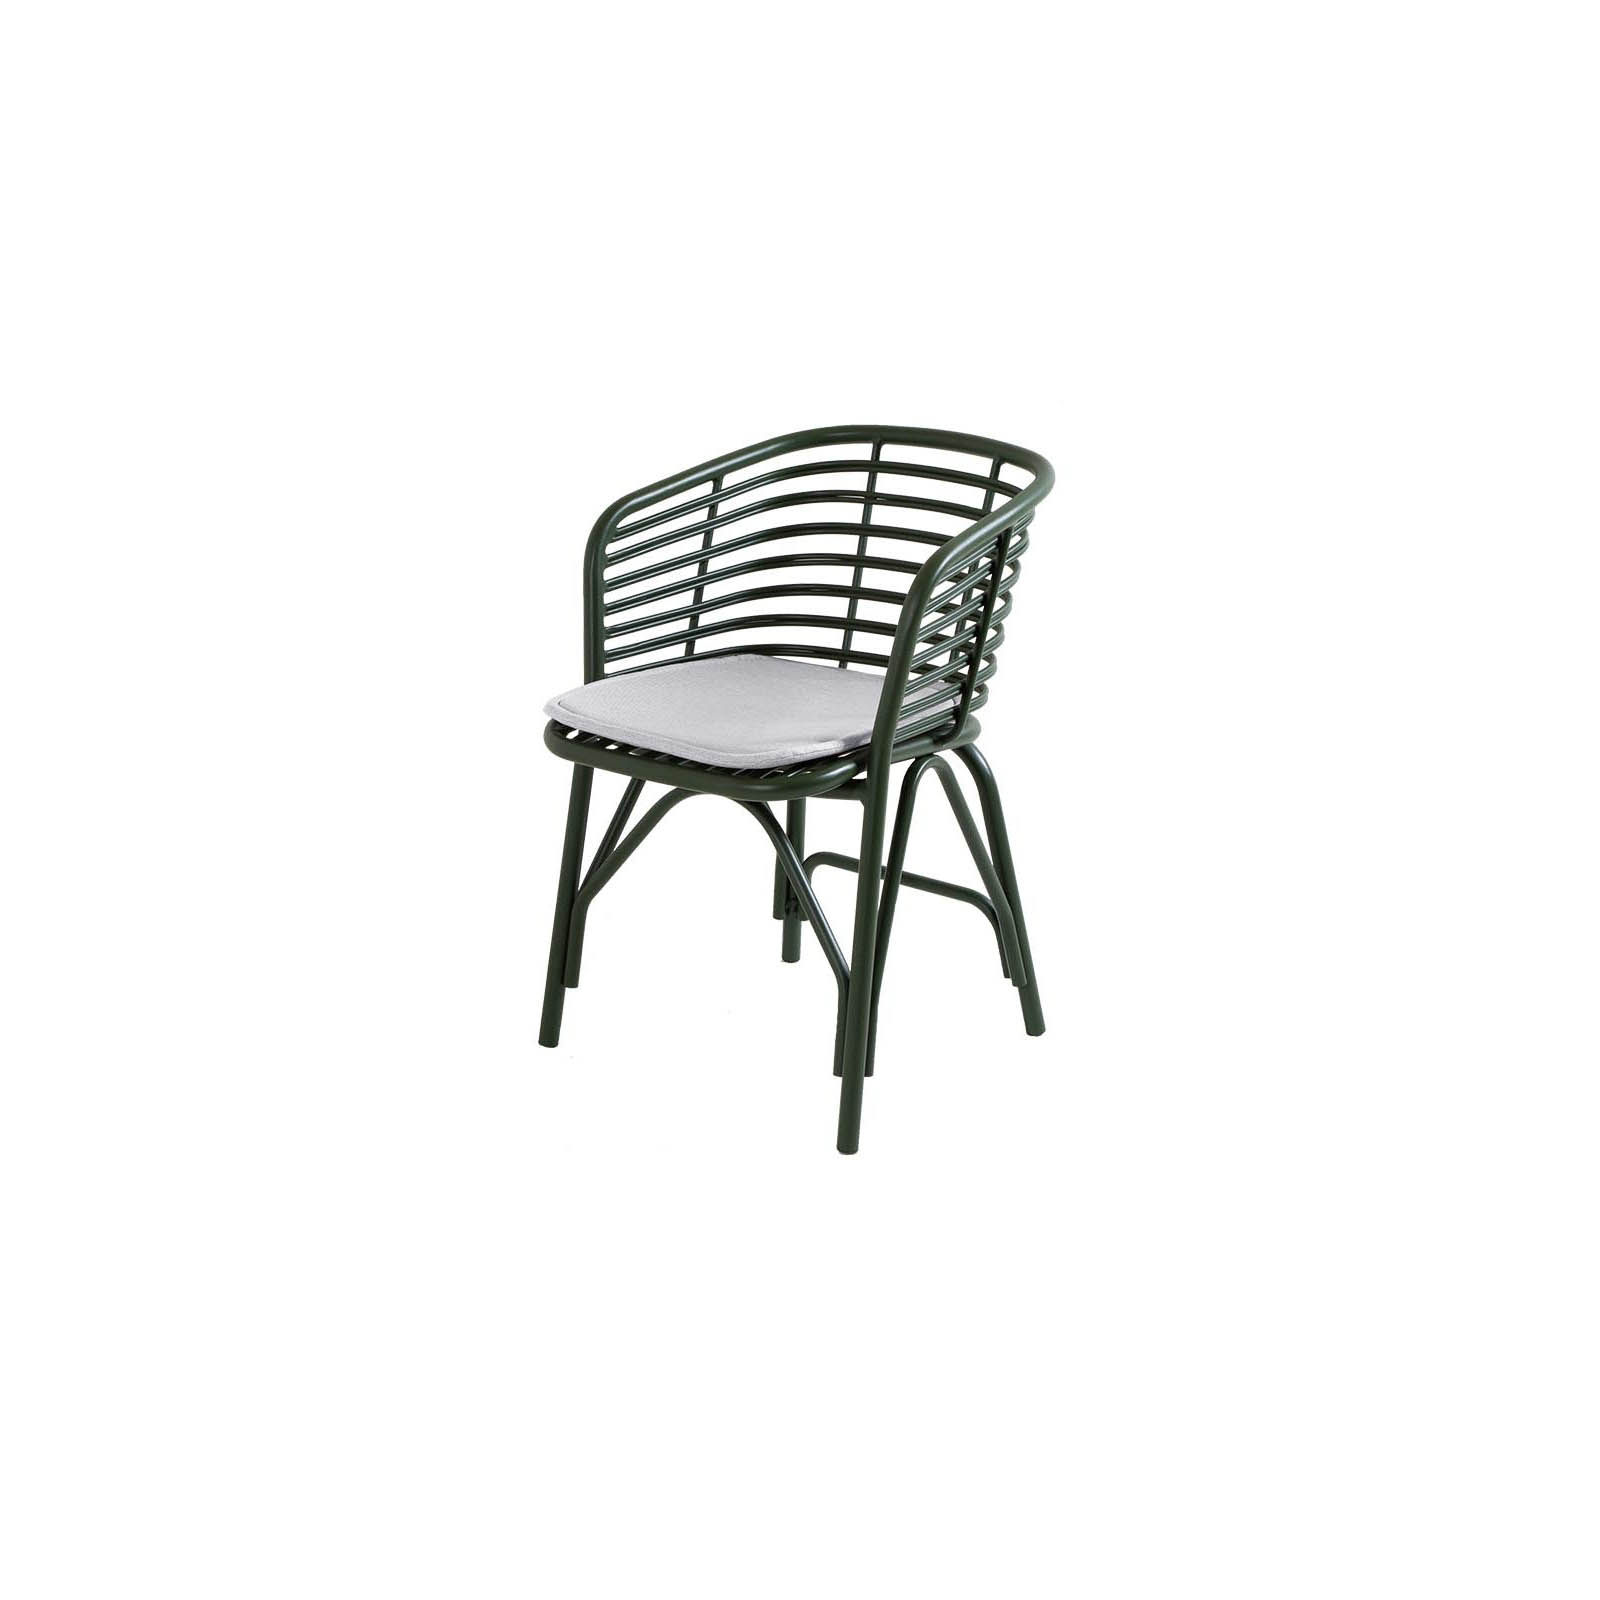 Blend Stuhl aus Aluminium in Dark Green mit Kissen aus Cane-line Natté in Light Grey